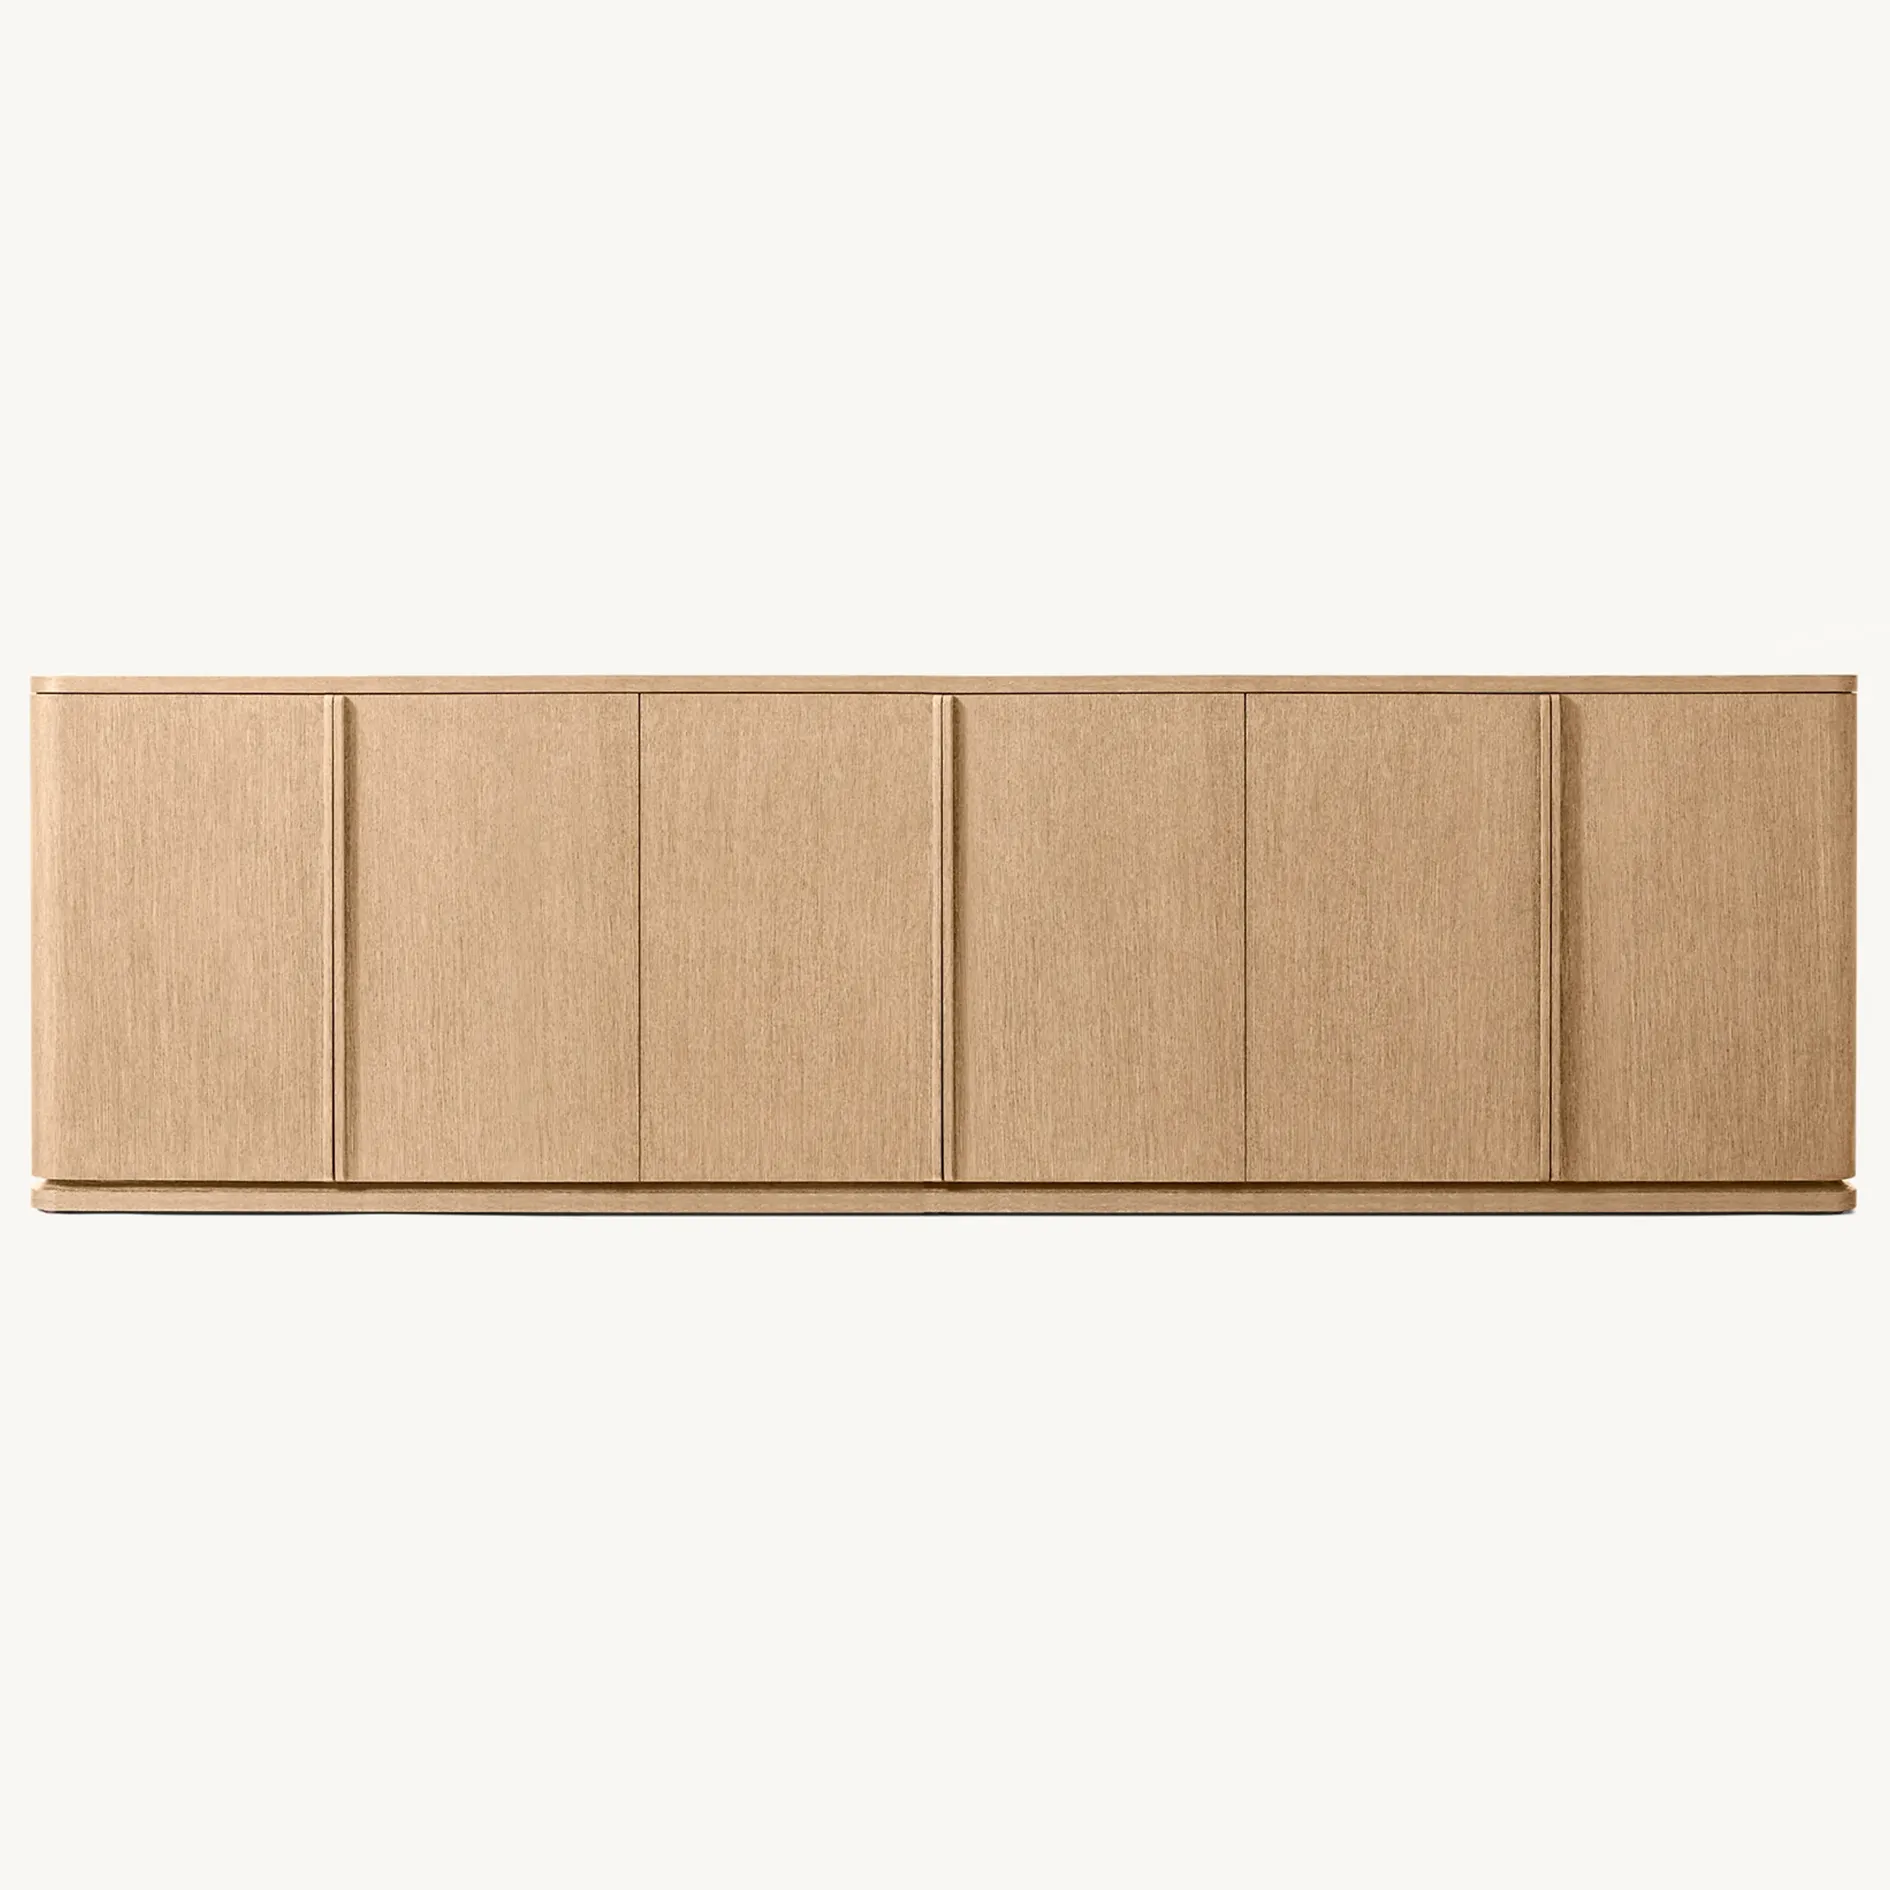 Indoor High-End-Möbel aus weißer Eiche 6-türige schöne Side boards Buffets chränke Luxus